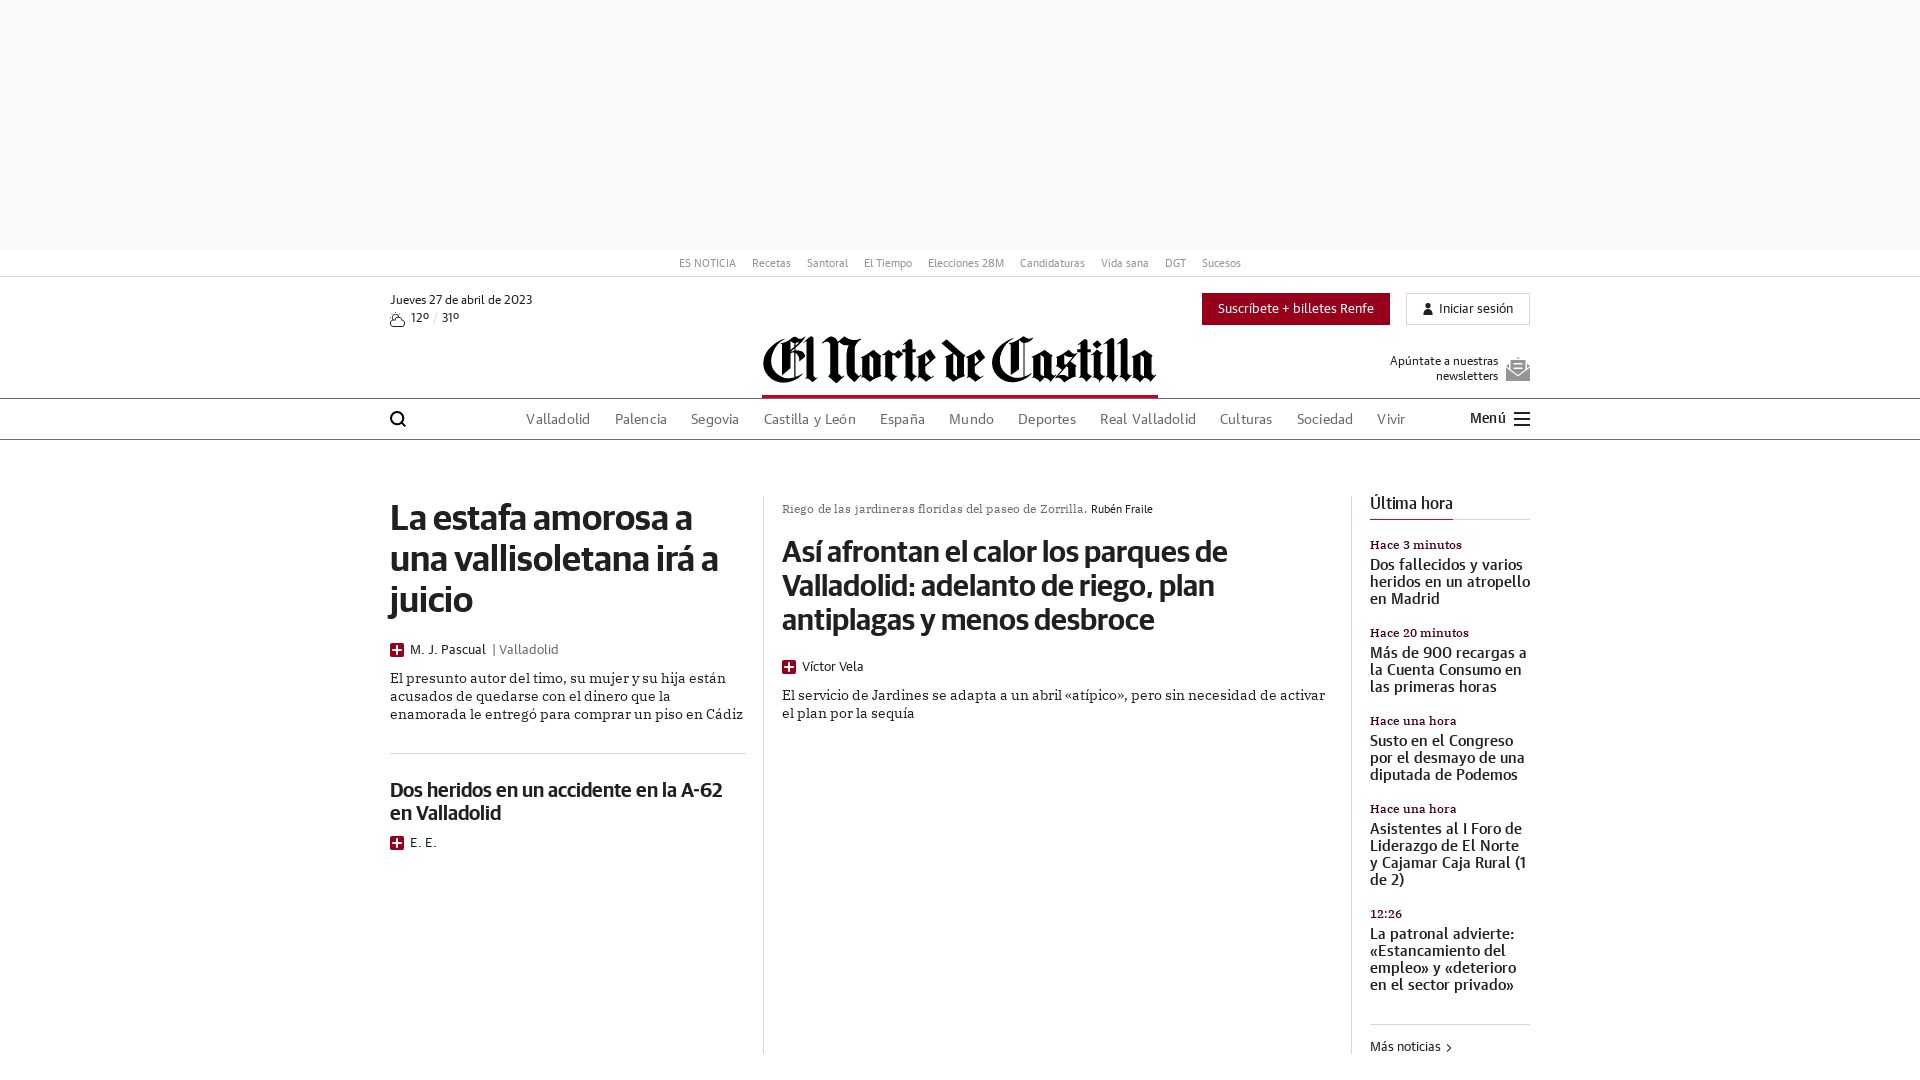 Website status elnortedecastilla.es is   ONLINE